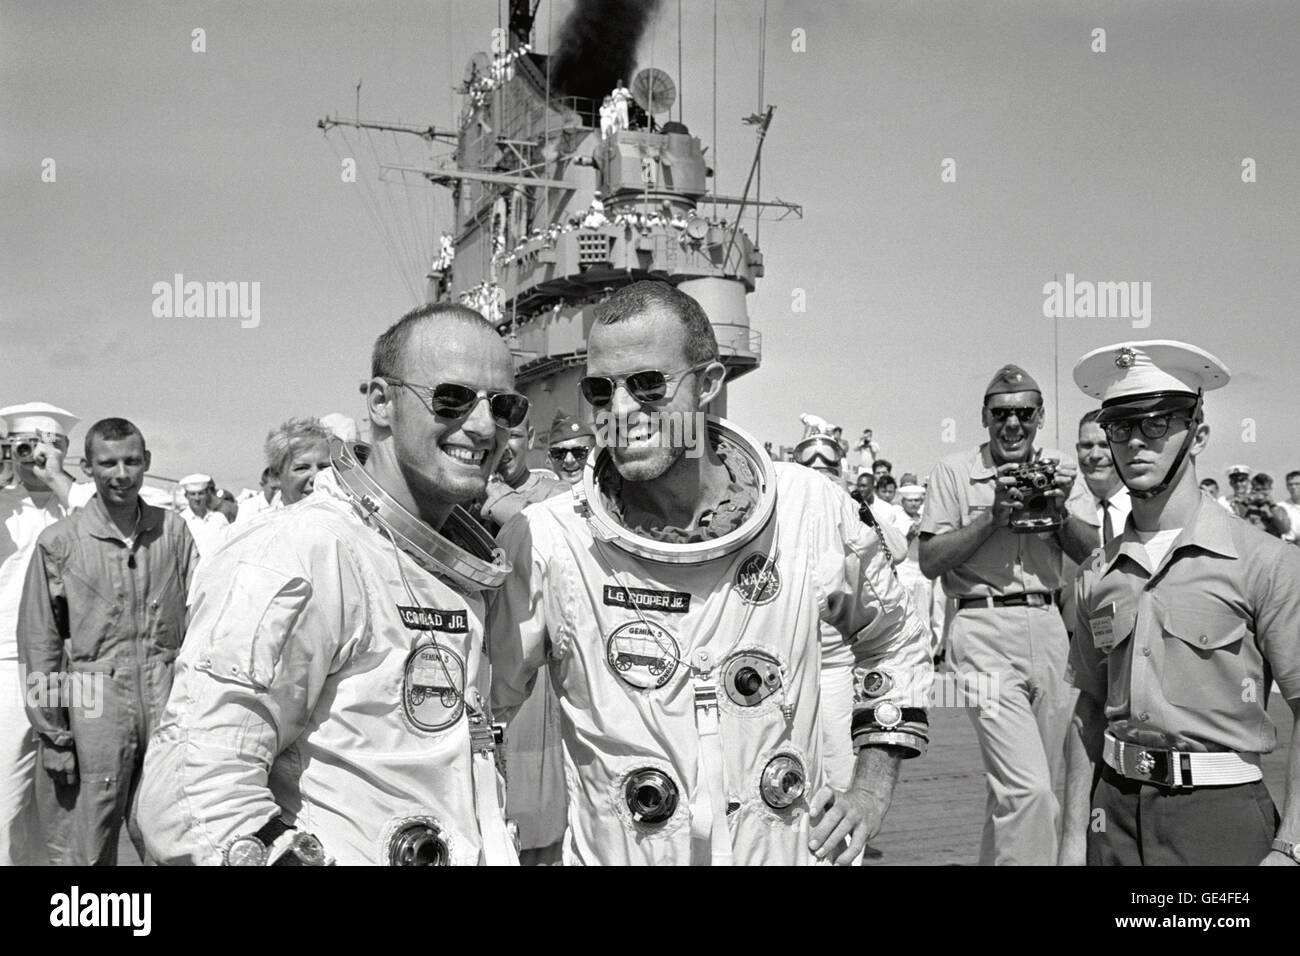 (29 agosto 1965) gli astronauti L. Gordon Cooper Jr (destra) e Charles Conrad Jr. attraversare a piedi il ponte di recupero portaerei Museo della Portaerei U.S.S. Lake Champlain seguenti splashdown e recupero dall'oceano. Immagine # : S65-51442 Foto Stock